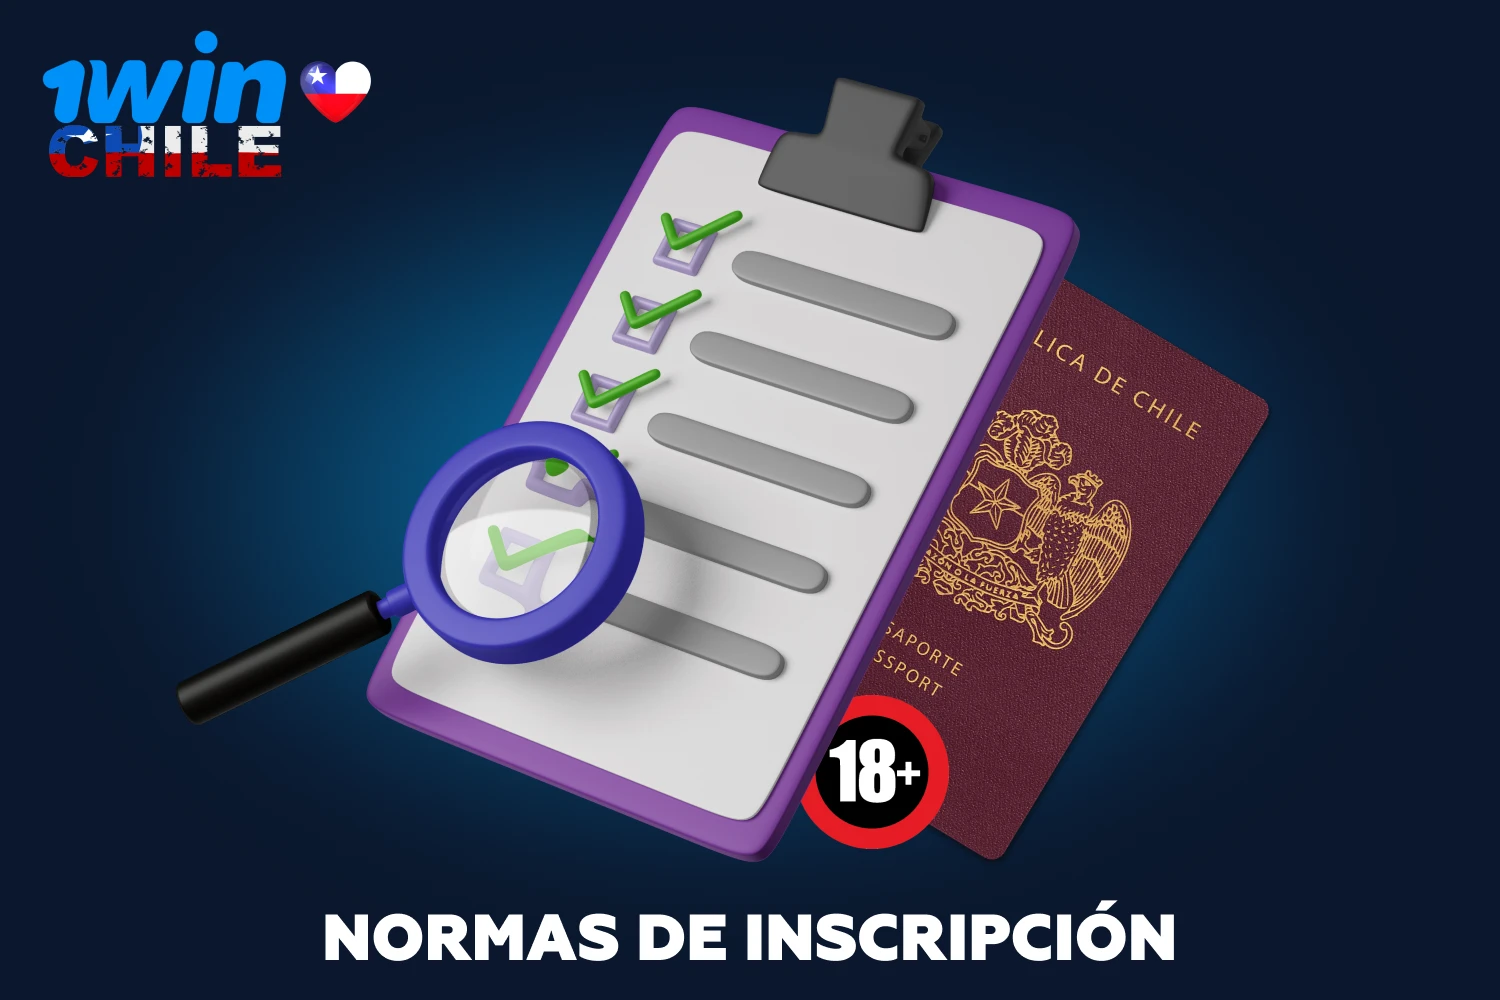 Antes de registrarse en 1win, debe familiarizarse con la lista de normas que deben cumplir los jugadores de Chile